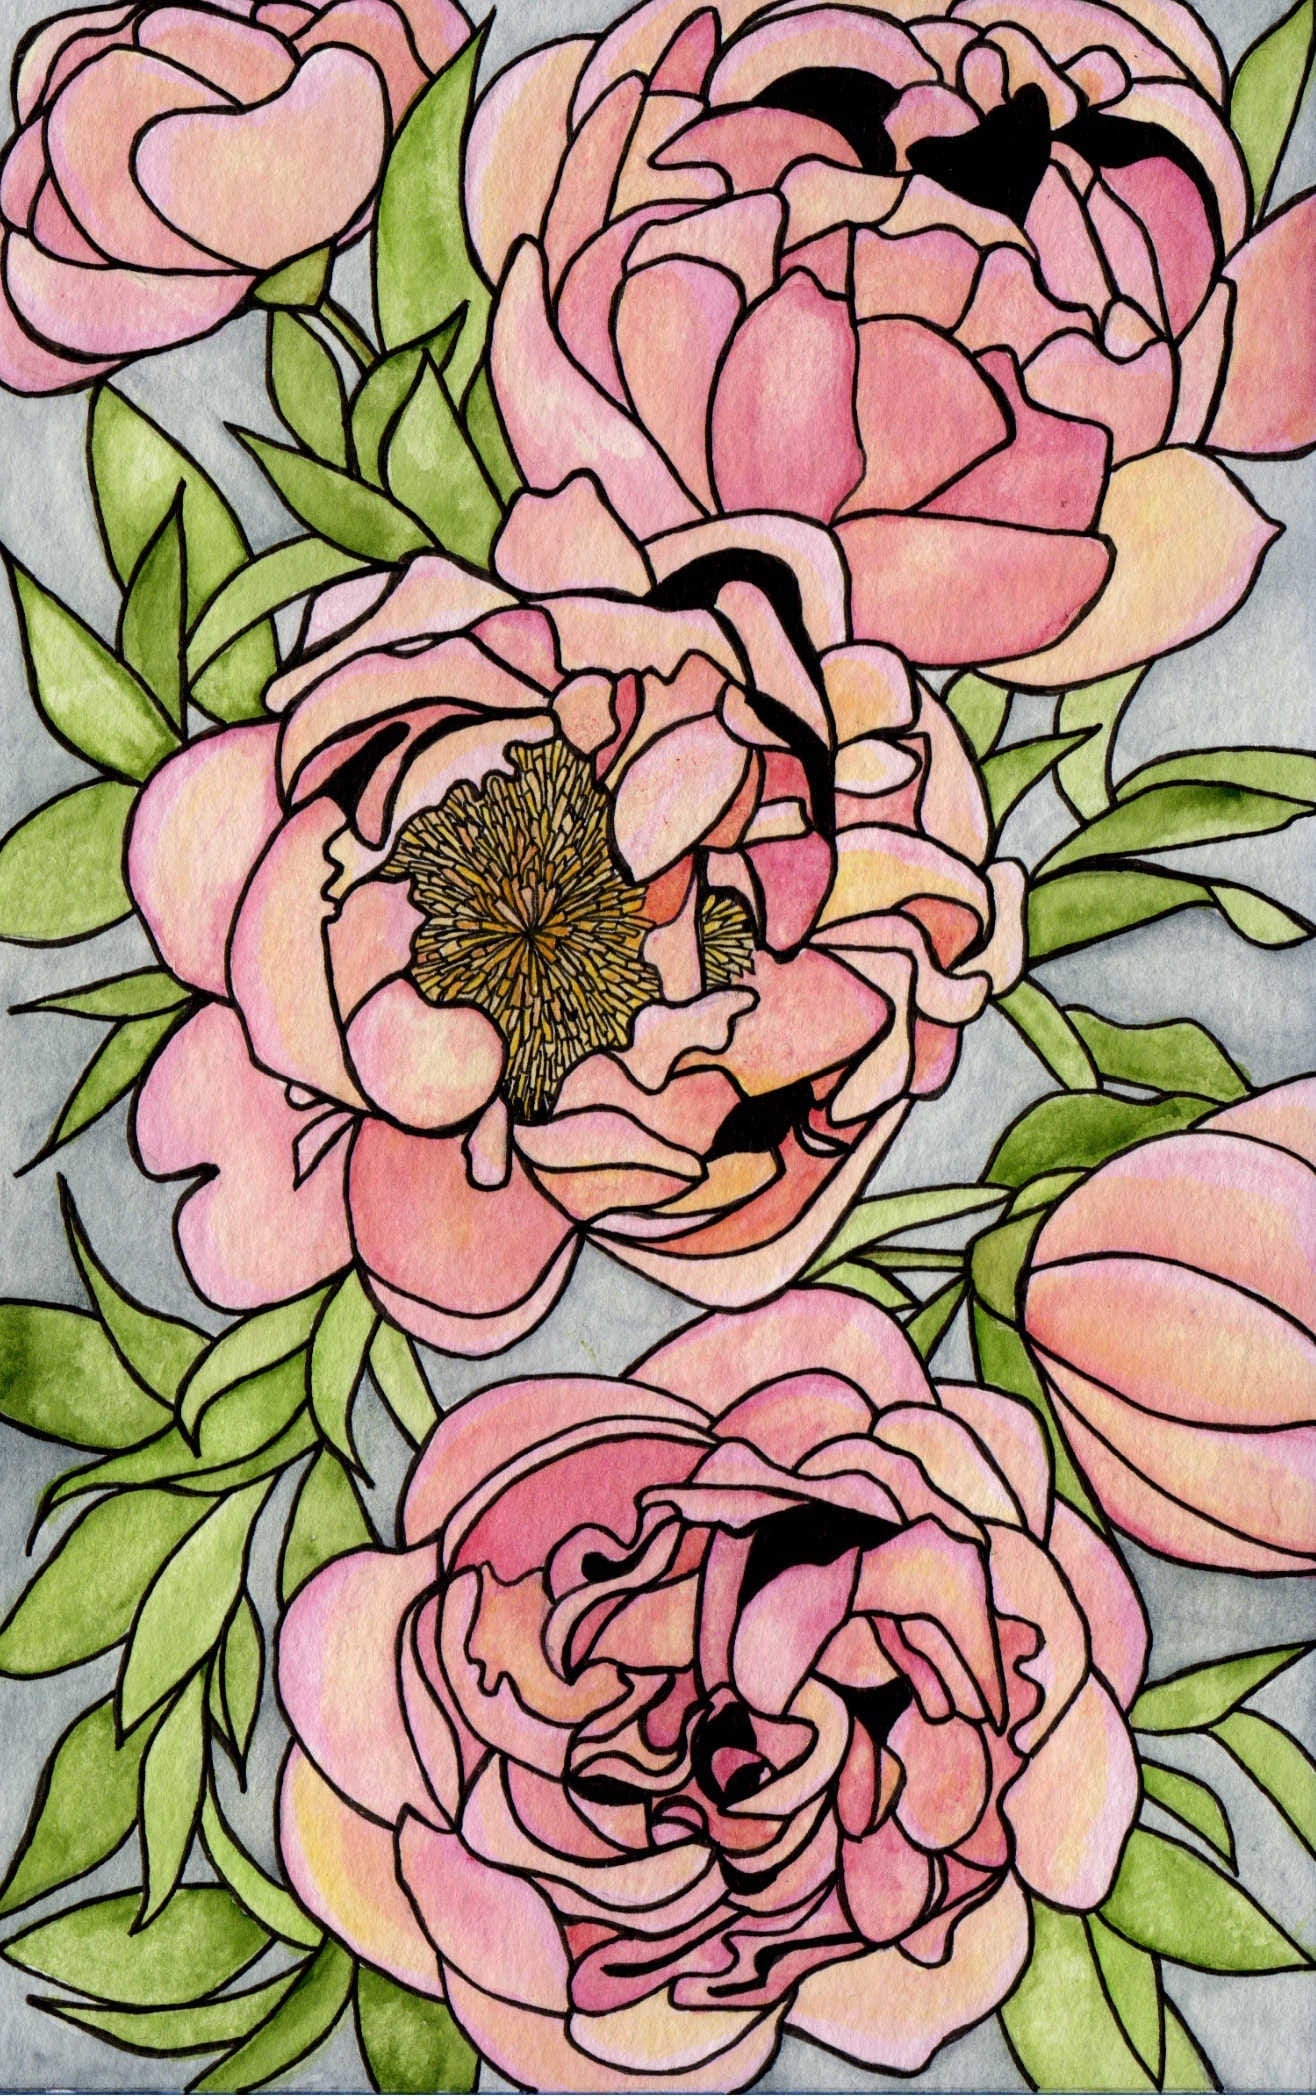 PinkPolish Design Art Prints "Floral Carpet" Watercolor Painting: Art Print